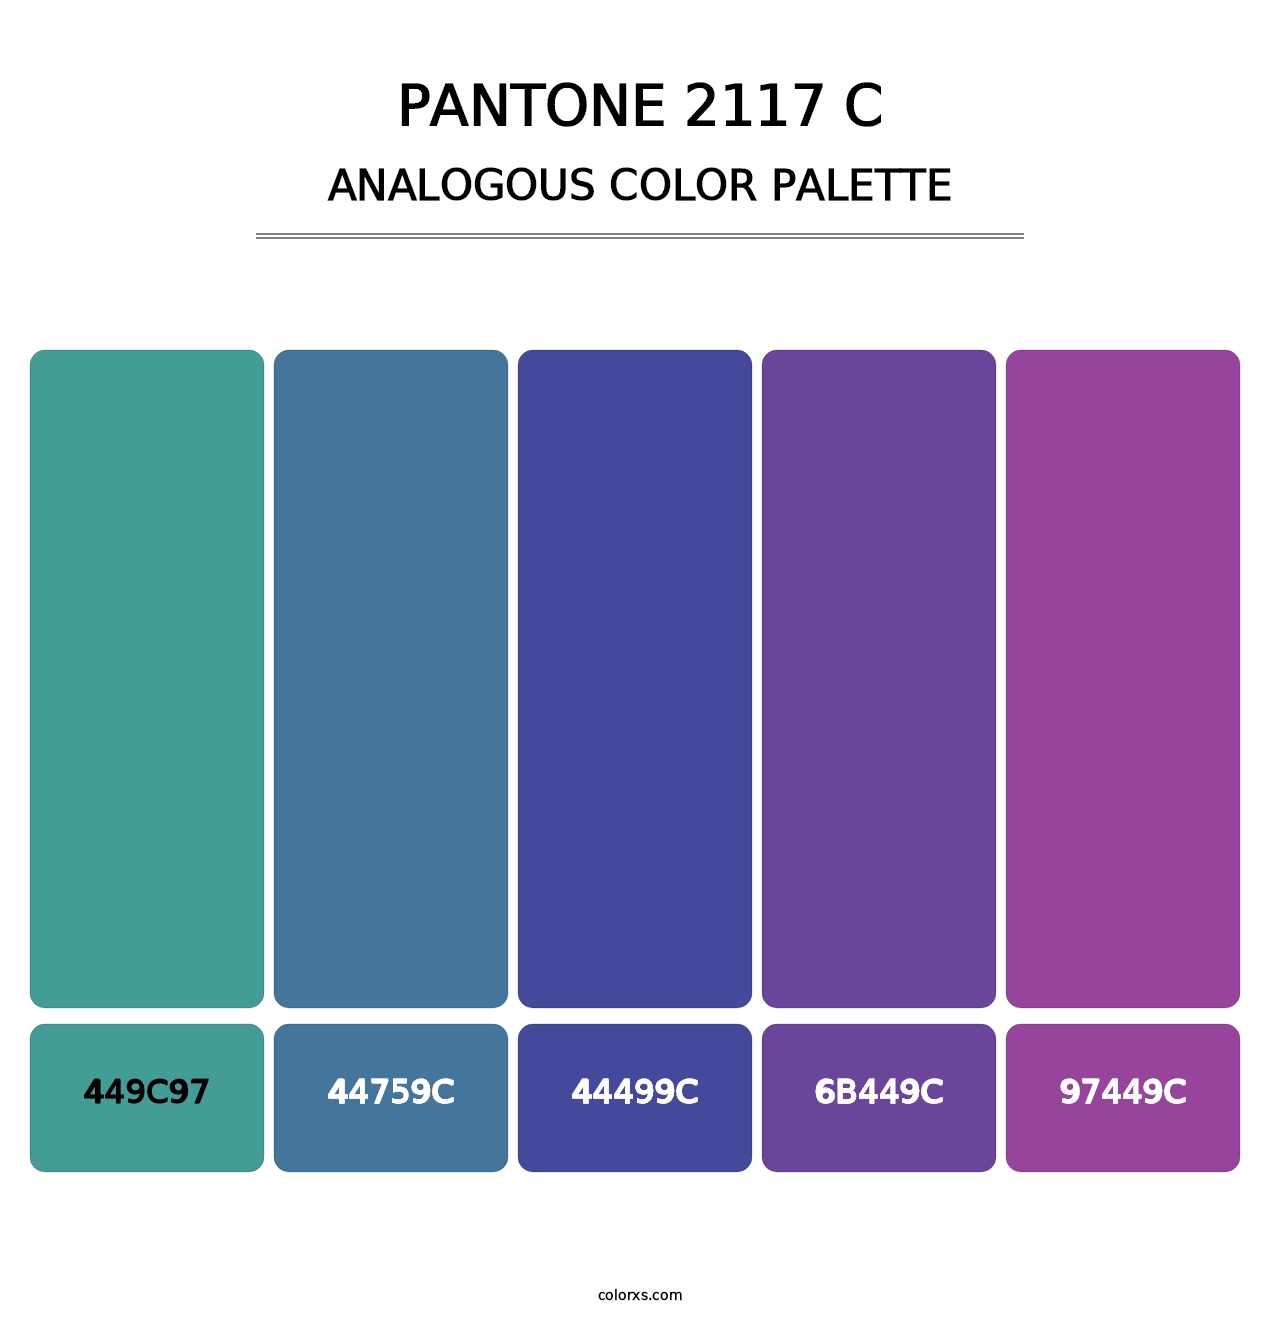 PANTONE 2117 C - Analogous Color Palette